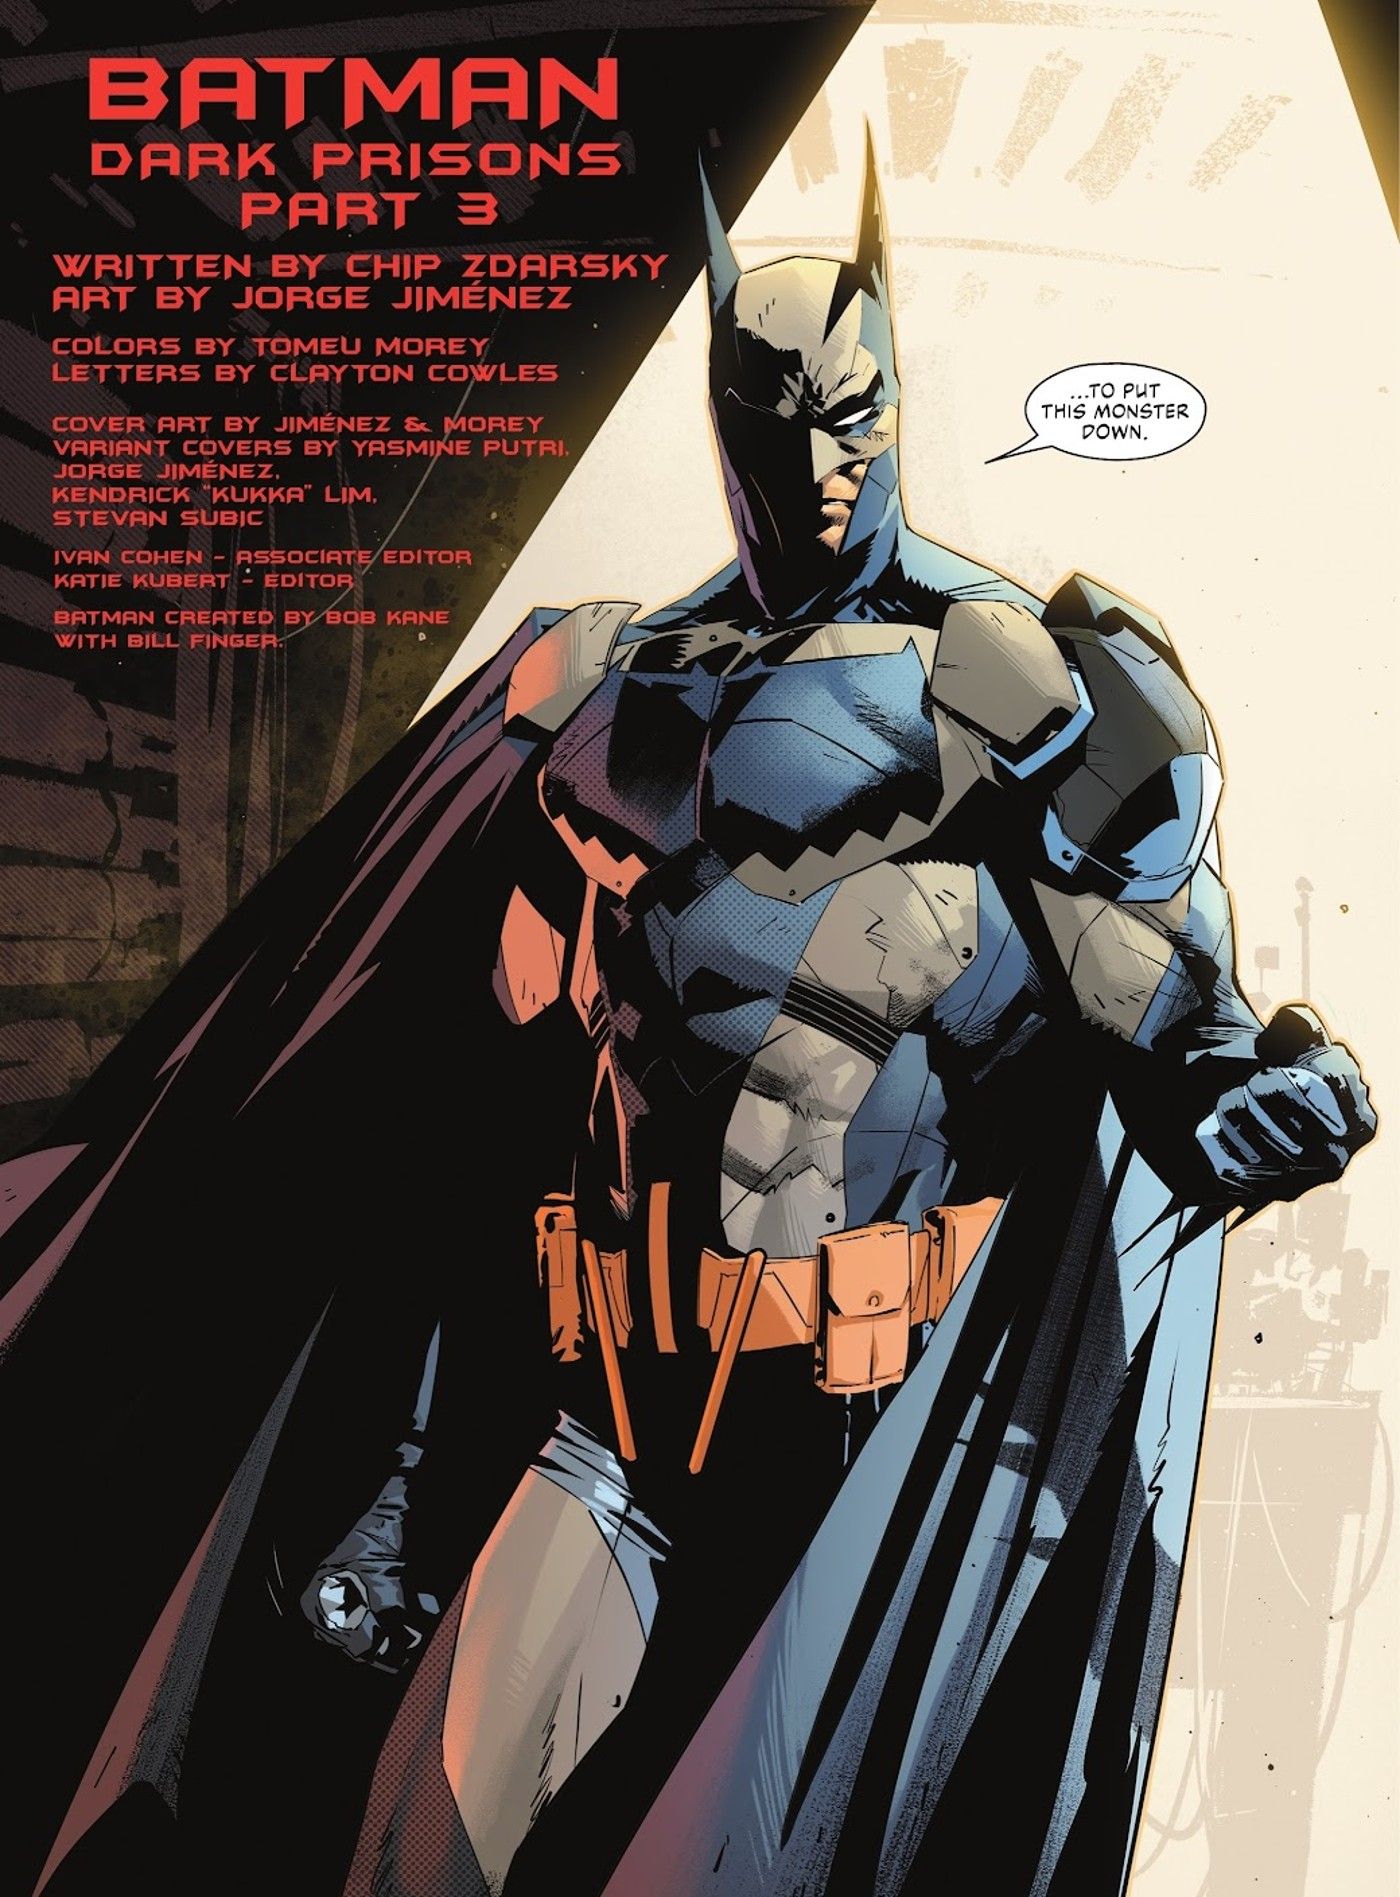 nowy kostium Batmana w kolorze szaro-niebieskim